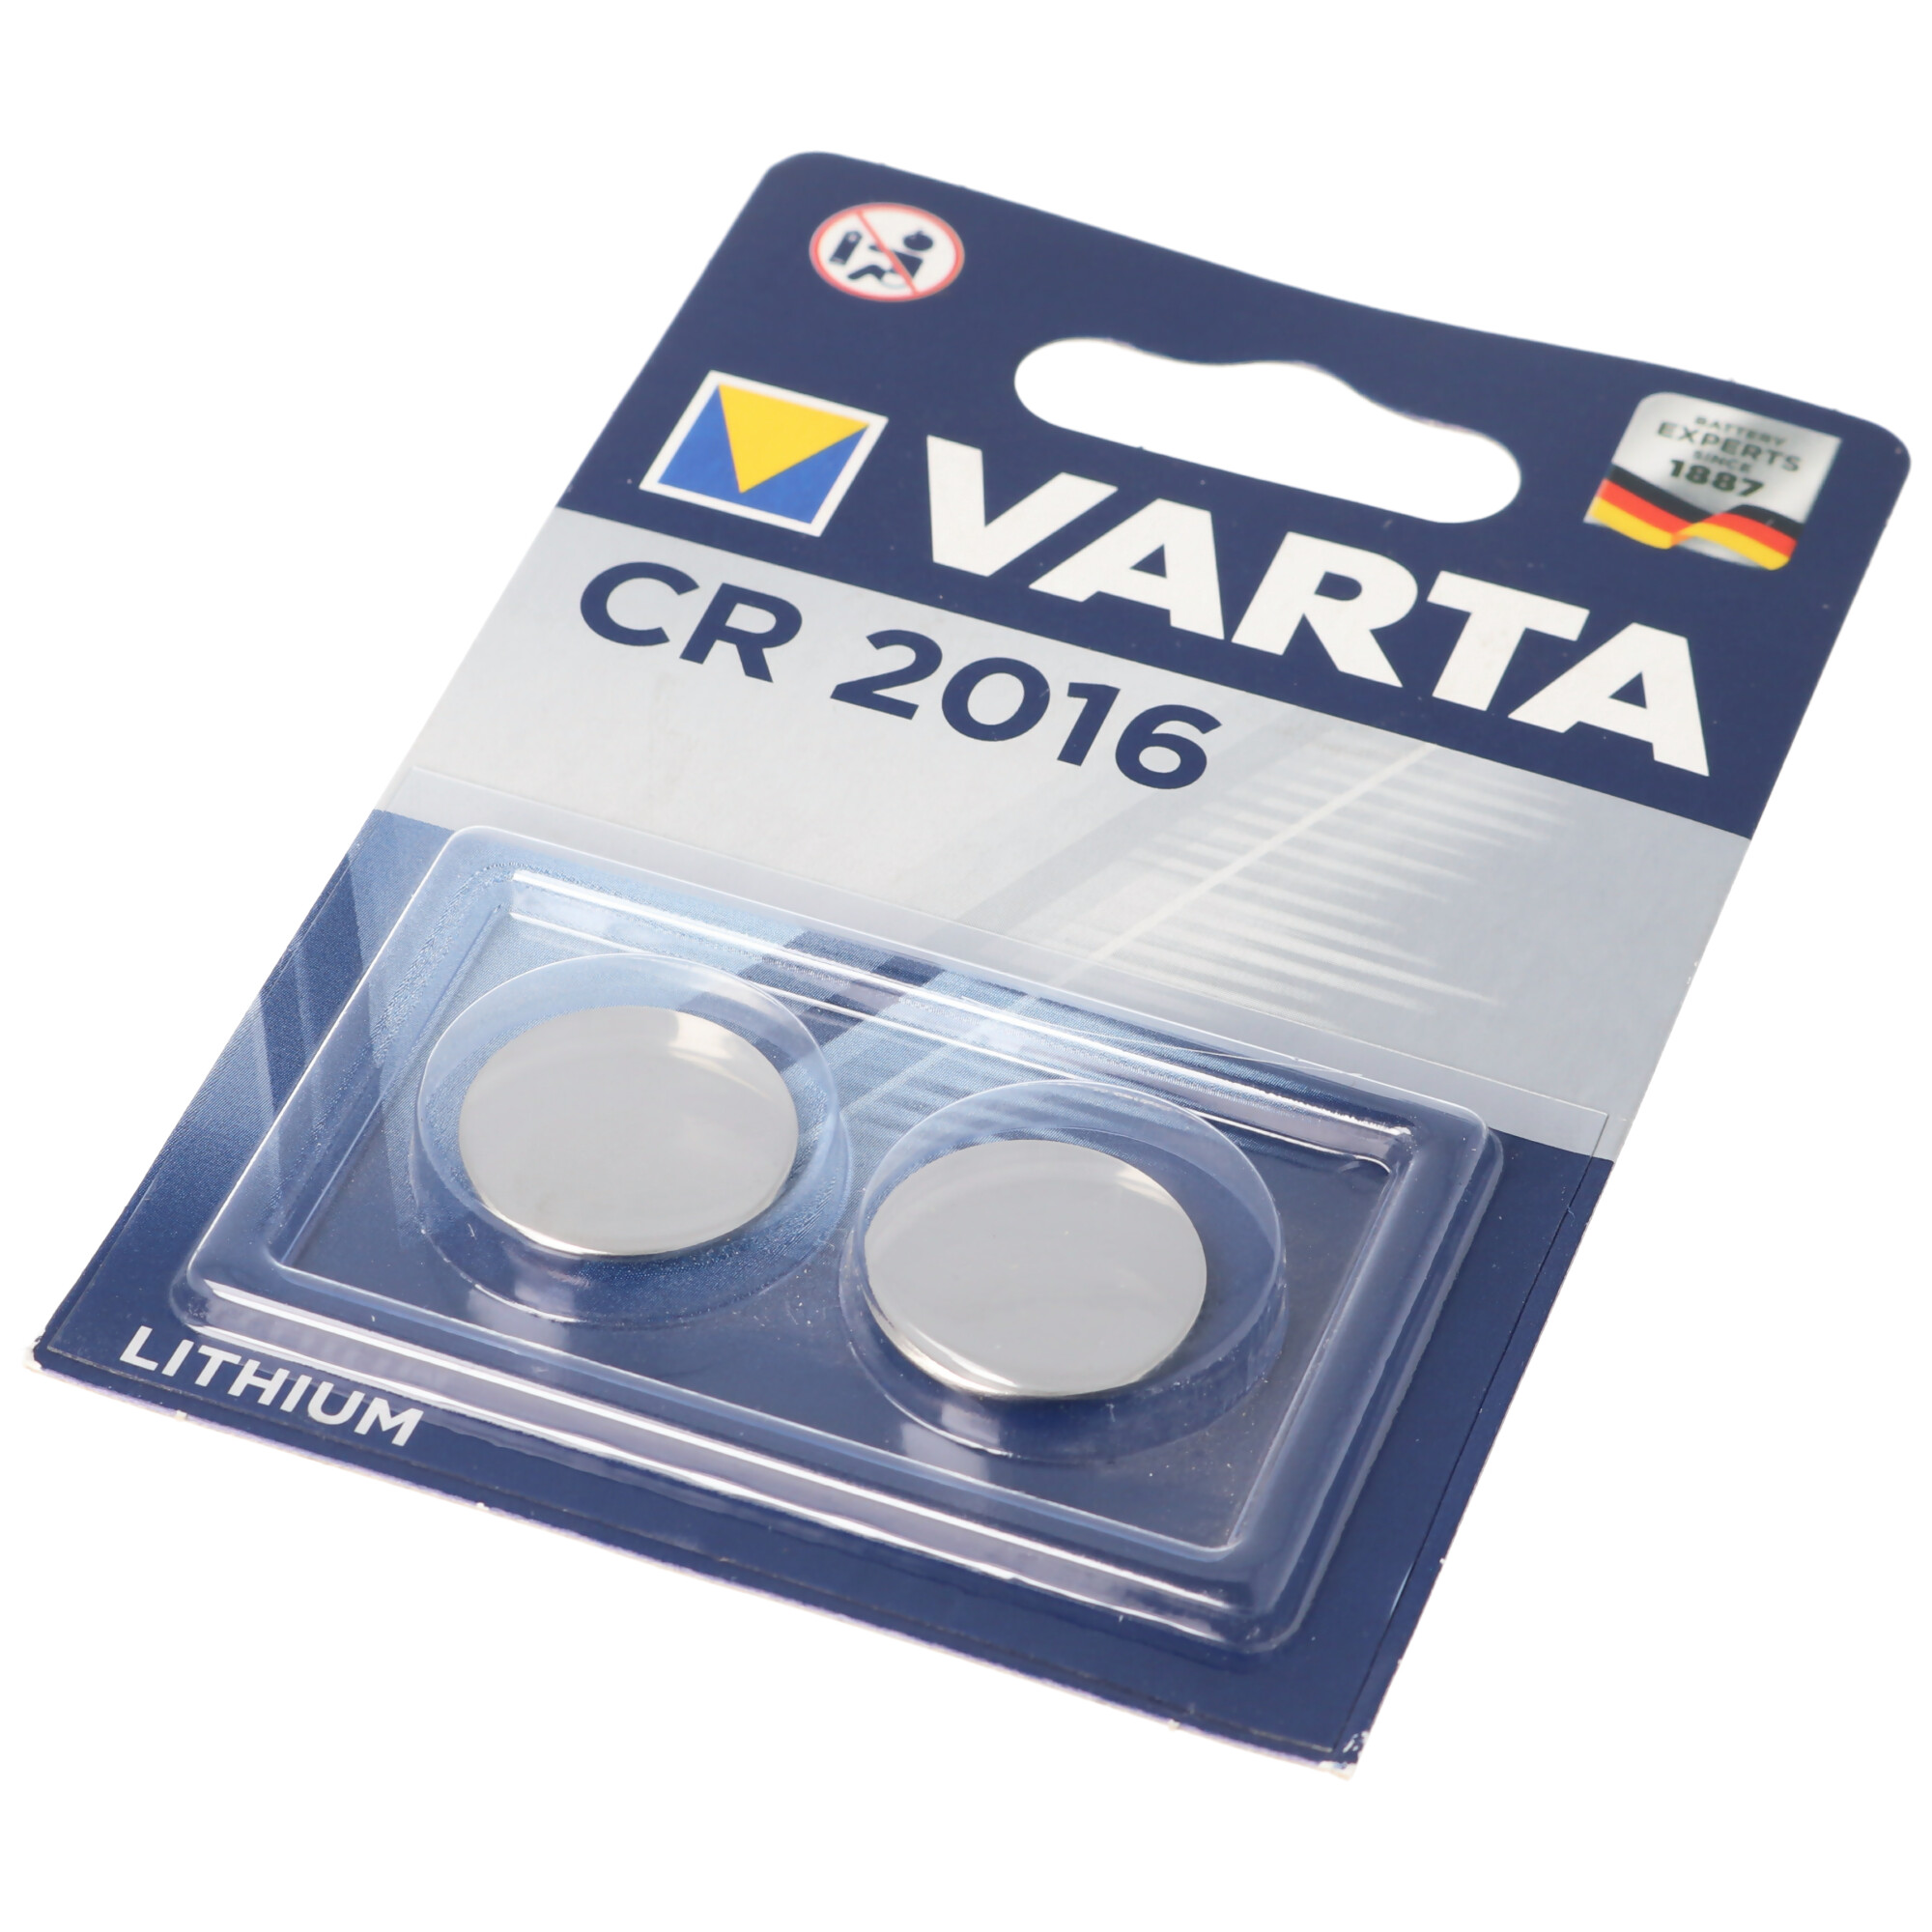 2 Stück Varta CR2016 Lithium Batterie IEC CR 2016